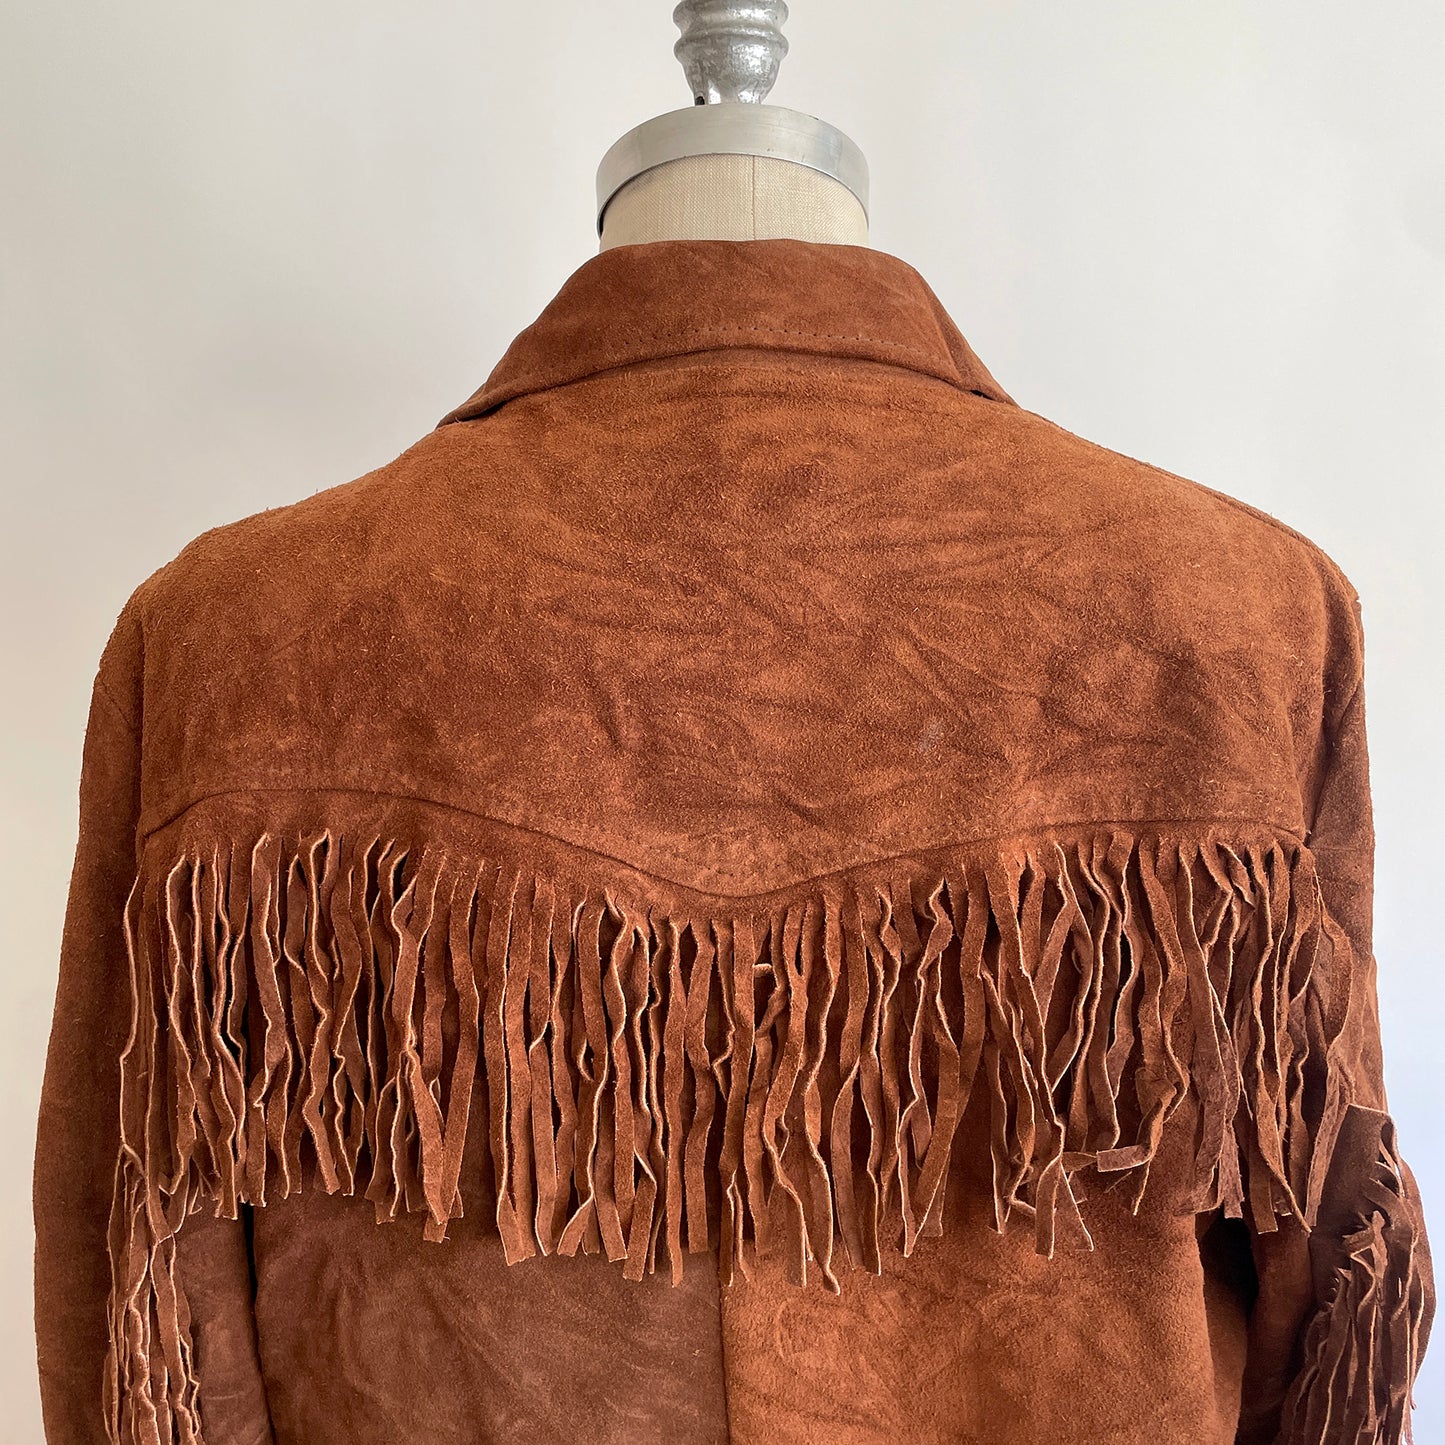 Vintage lined Fringe Suede coat